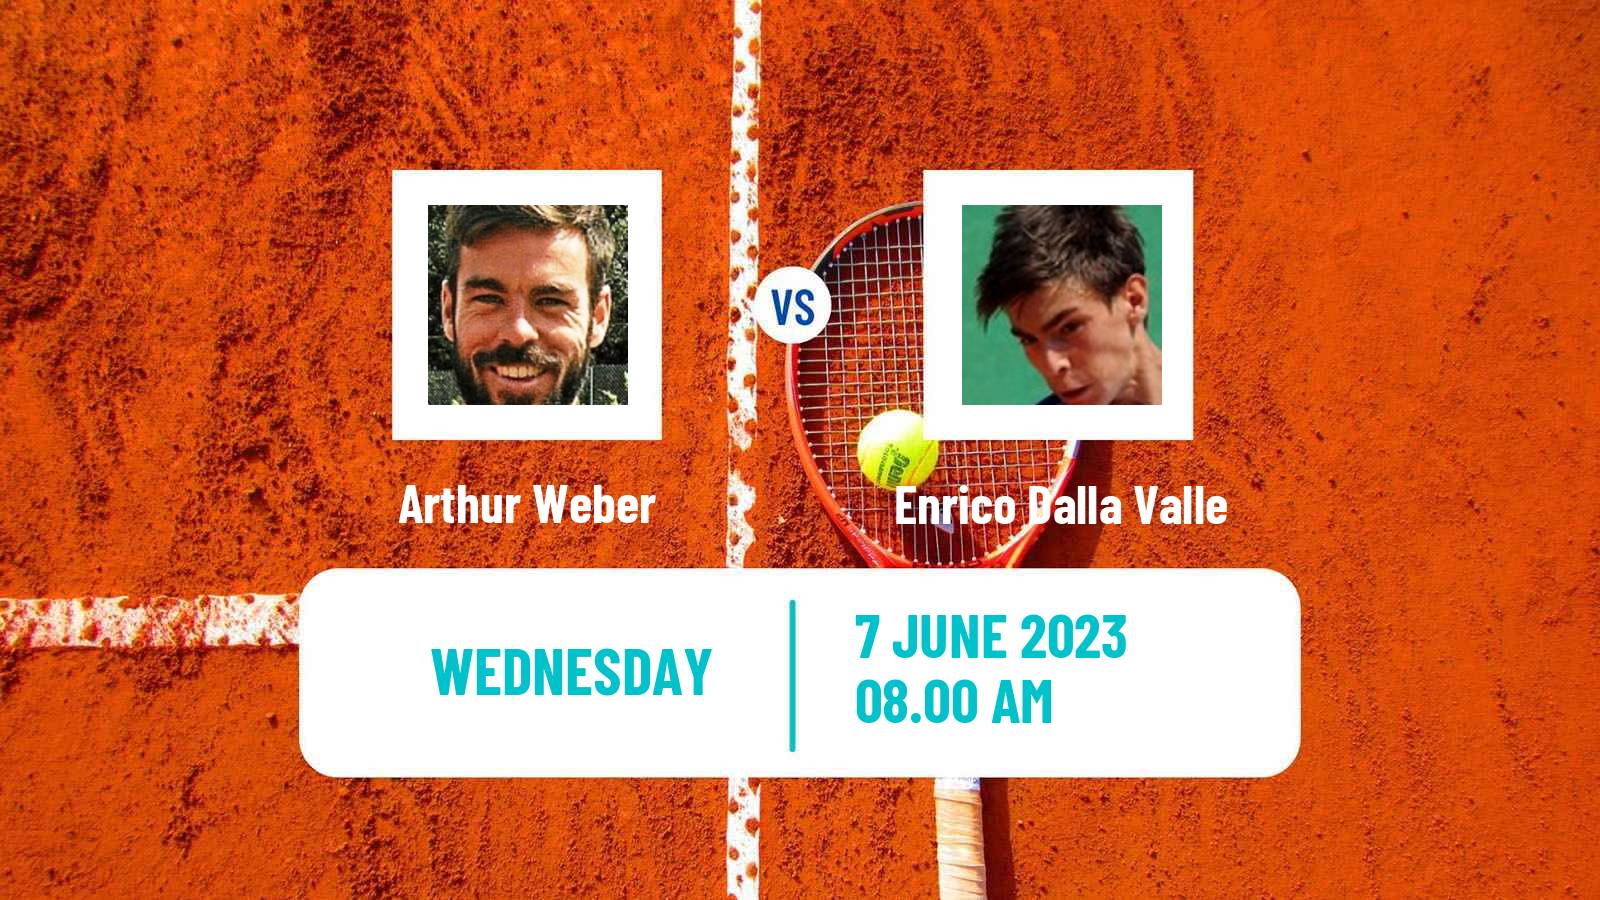 Tennis ITF M15 Frascati Men Arthur Weber - Enrico Dalla Valle